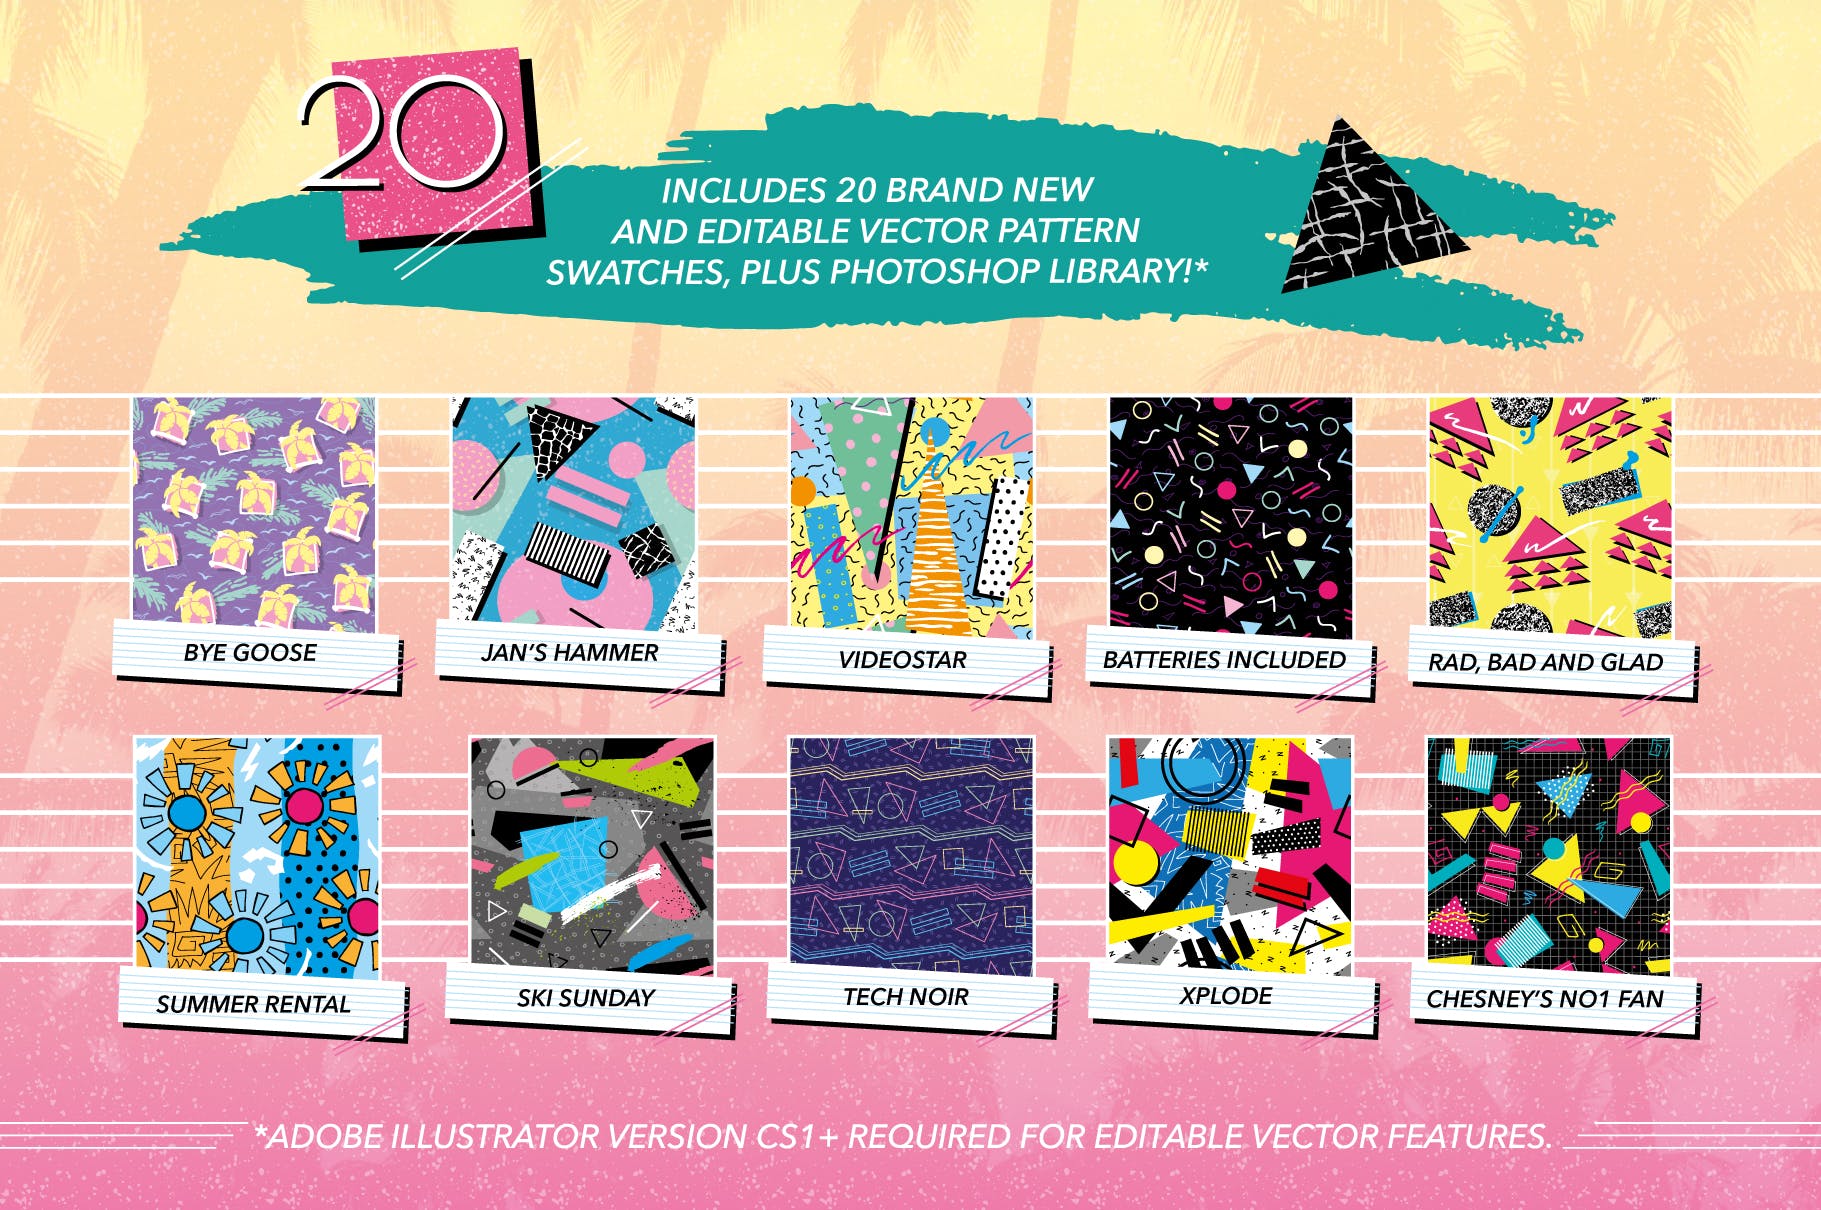 复刻欧美1980s年代设计风格图案背景素材库精选v2 1980s Retro Patterns Volume Two插图(1)